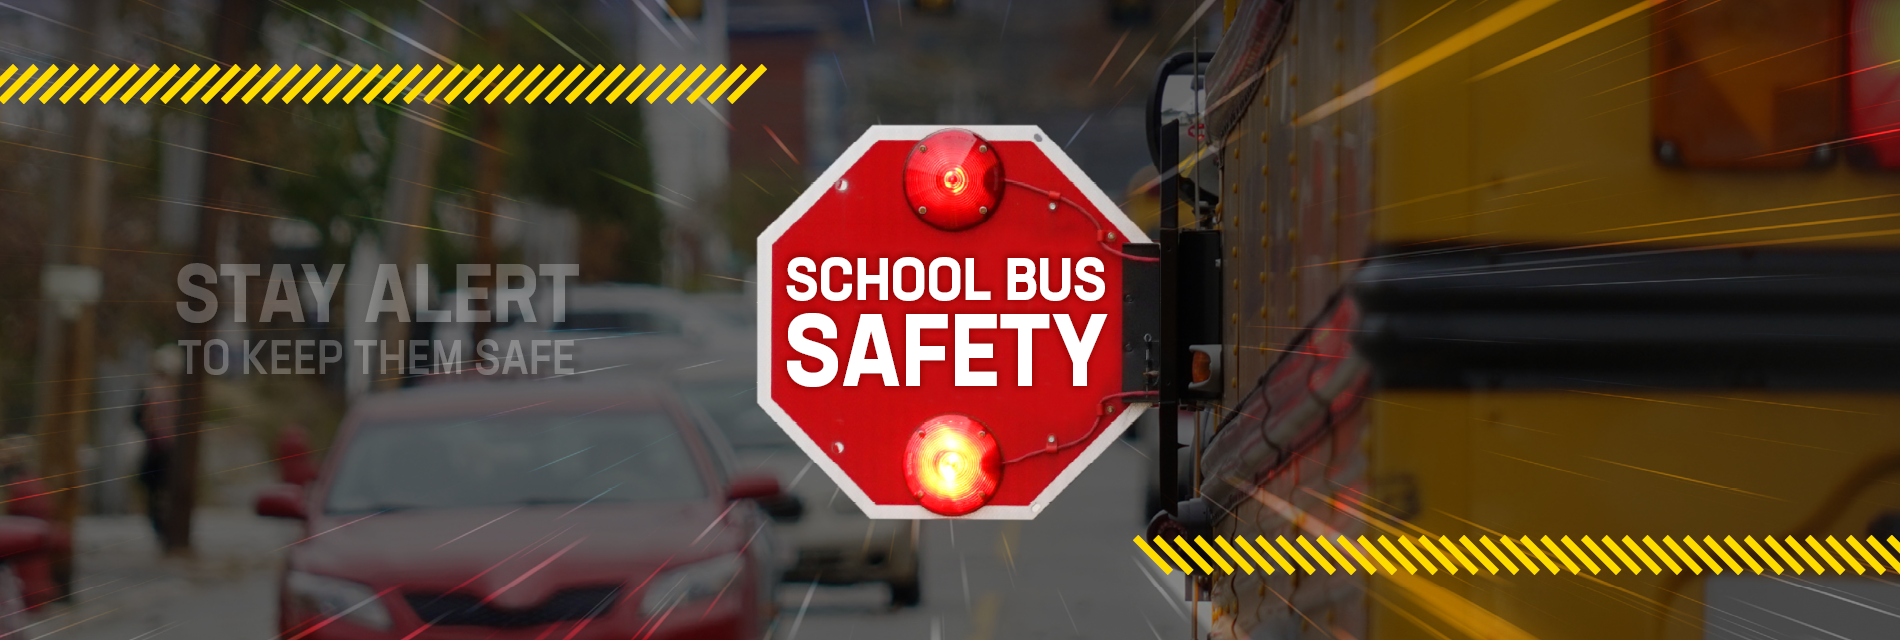 School Bus Safety Webpage Header